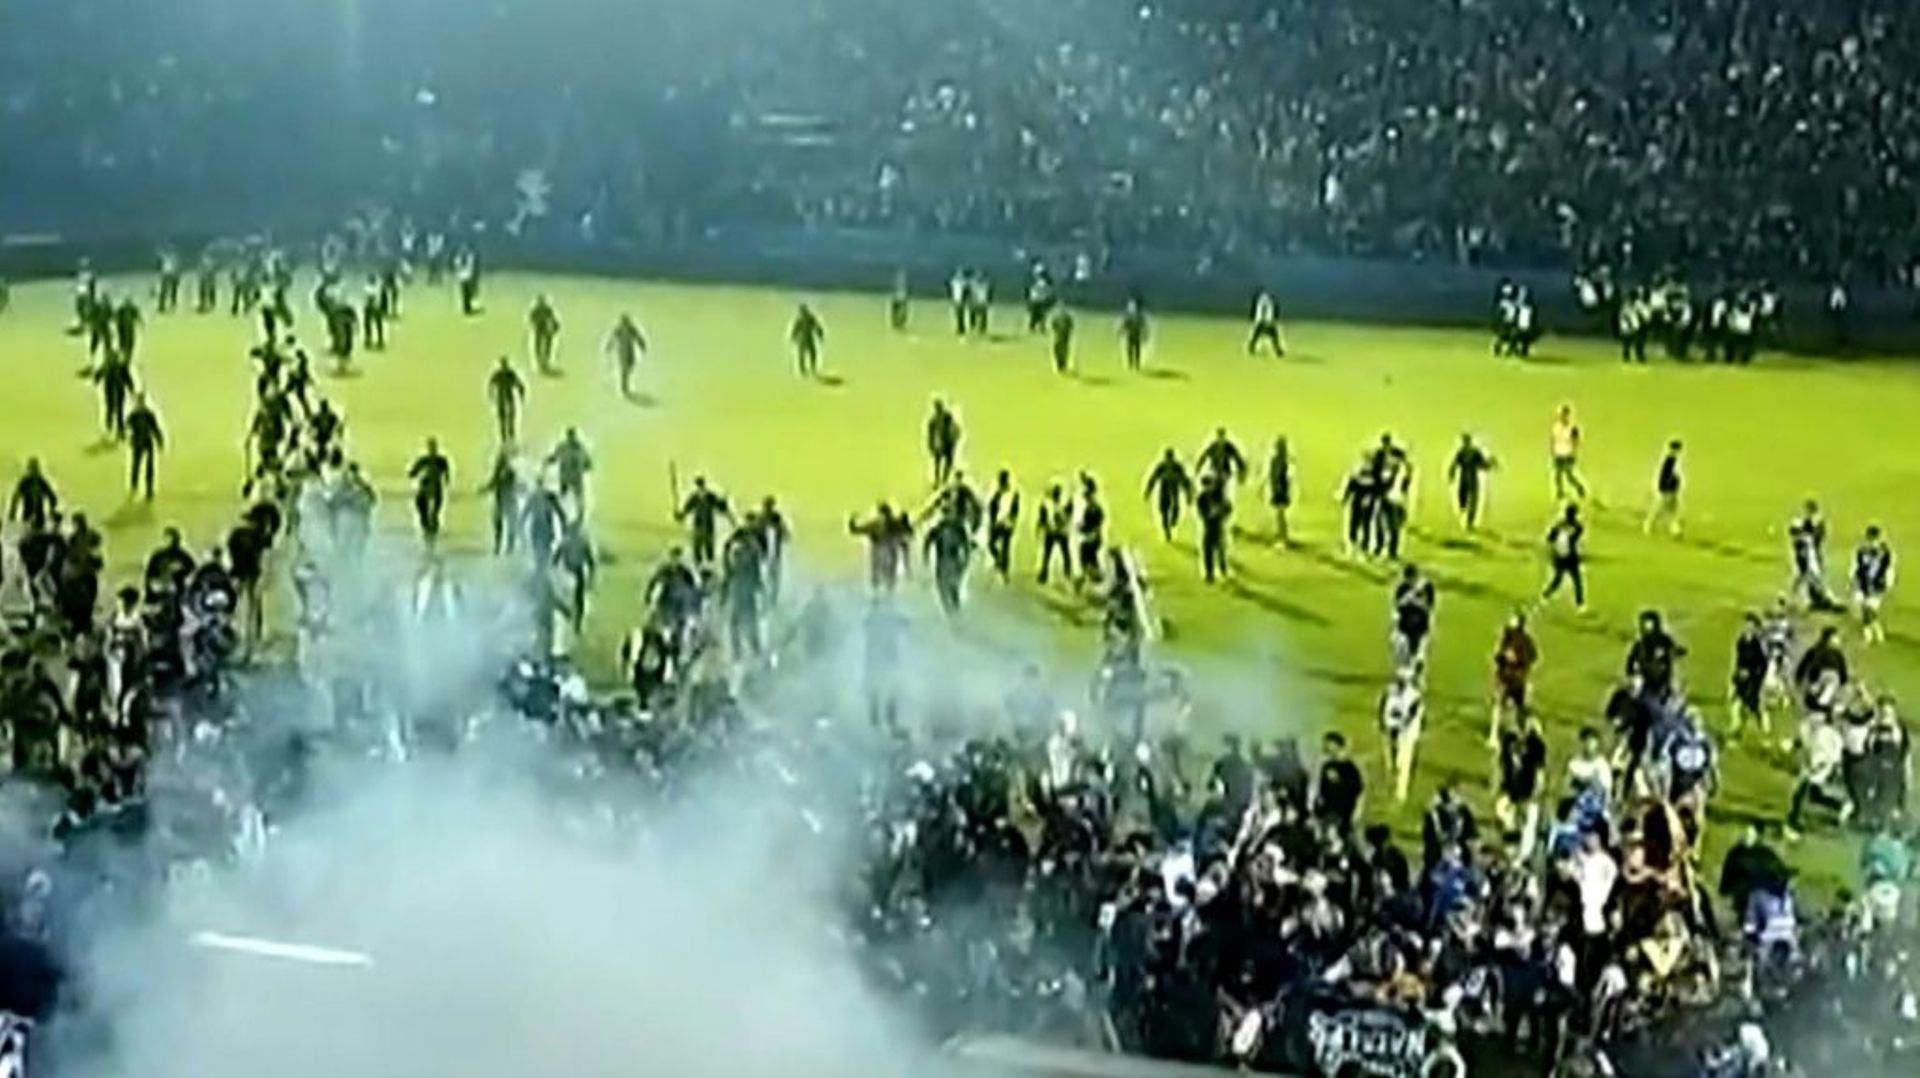 Capture d’écran d’une vidéo de l’AFPTV réalisée le 1er octobre 2022 montrant des gaz lacrymogènes tirés sur la foule lors d’un match, à Malang en Indonésie